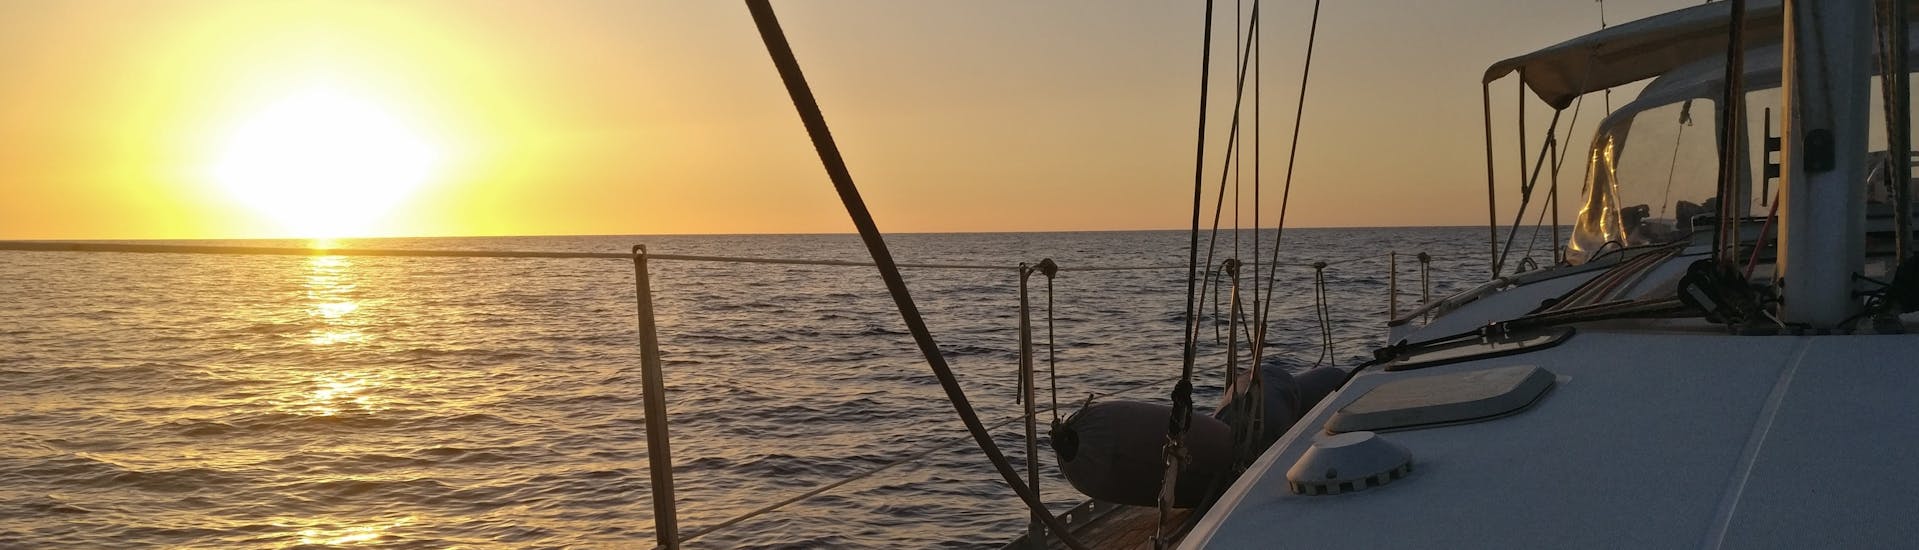 Uitzicht op de zee bij zonsondergang met een boot van Quarantesimo Parallelo Leuca.